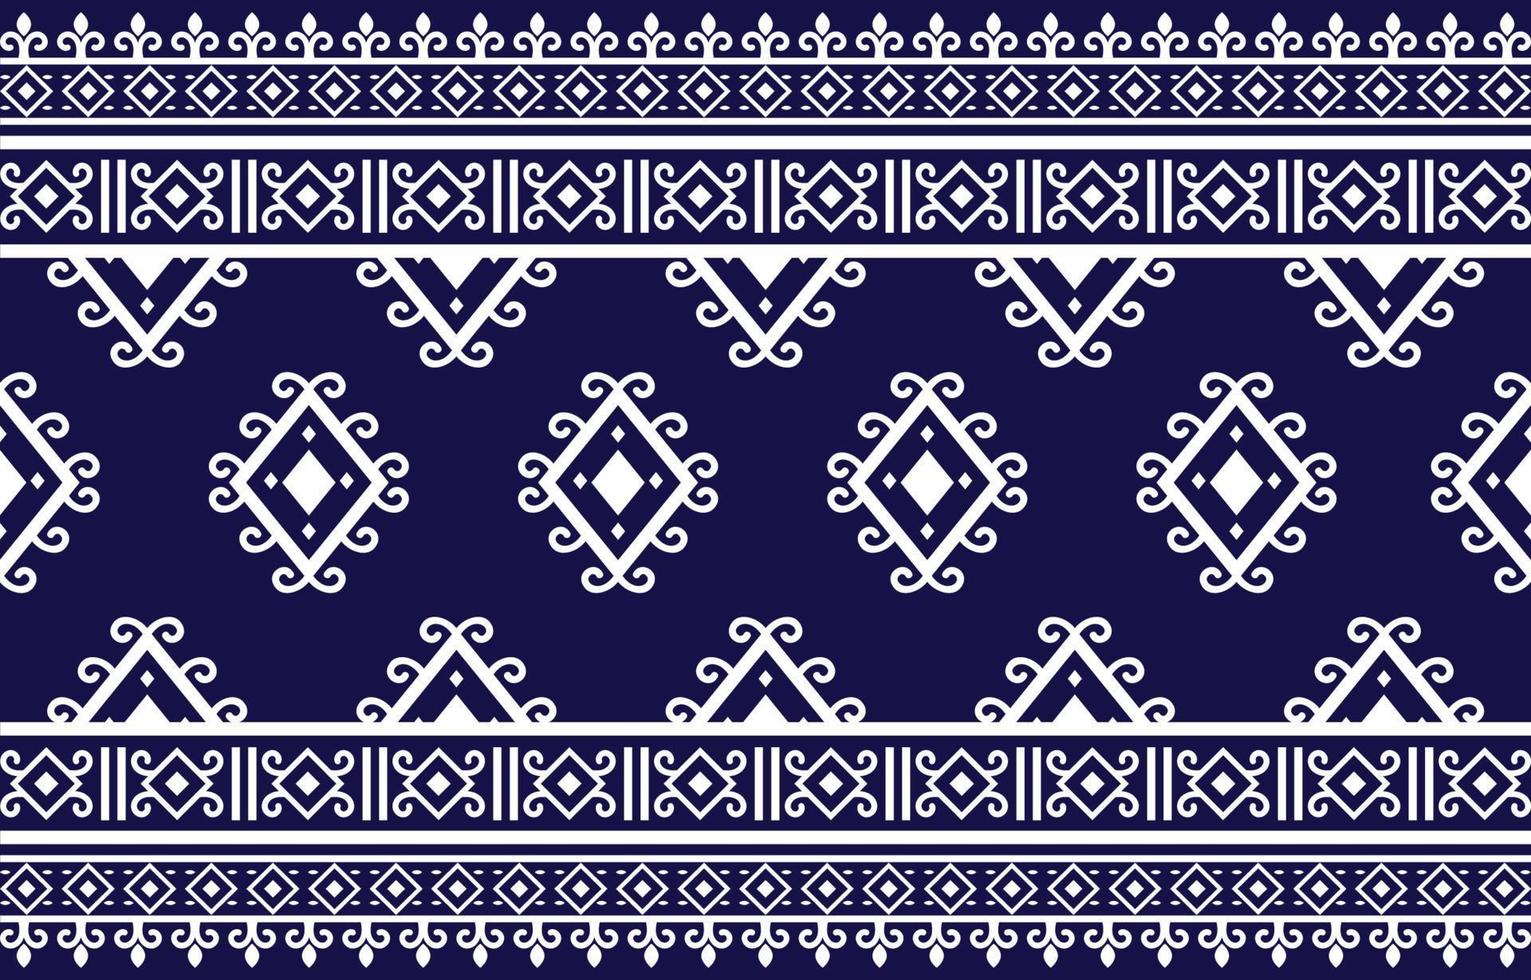 decorativo abstrato geomatrical étnico oriental padrão tradicional, design de fundo padrão floral étnico abstrato para tapete, papel de parede, roupas, embrulho, batik, tecido, vetor de impressão tradicional.